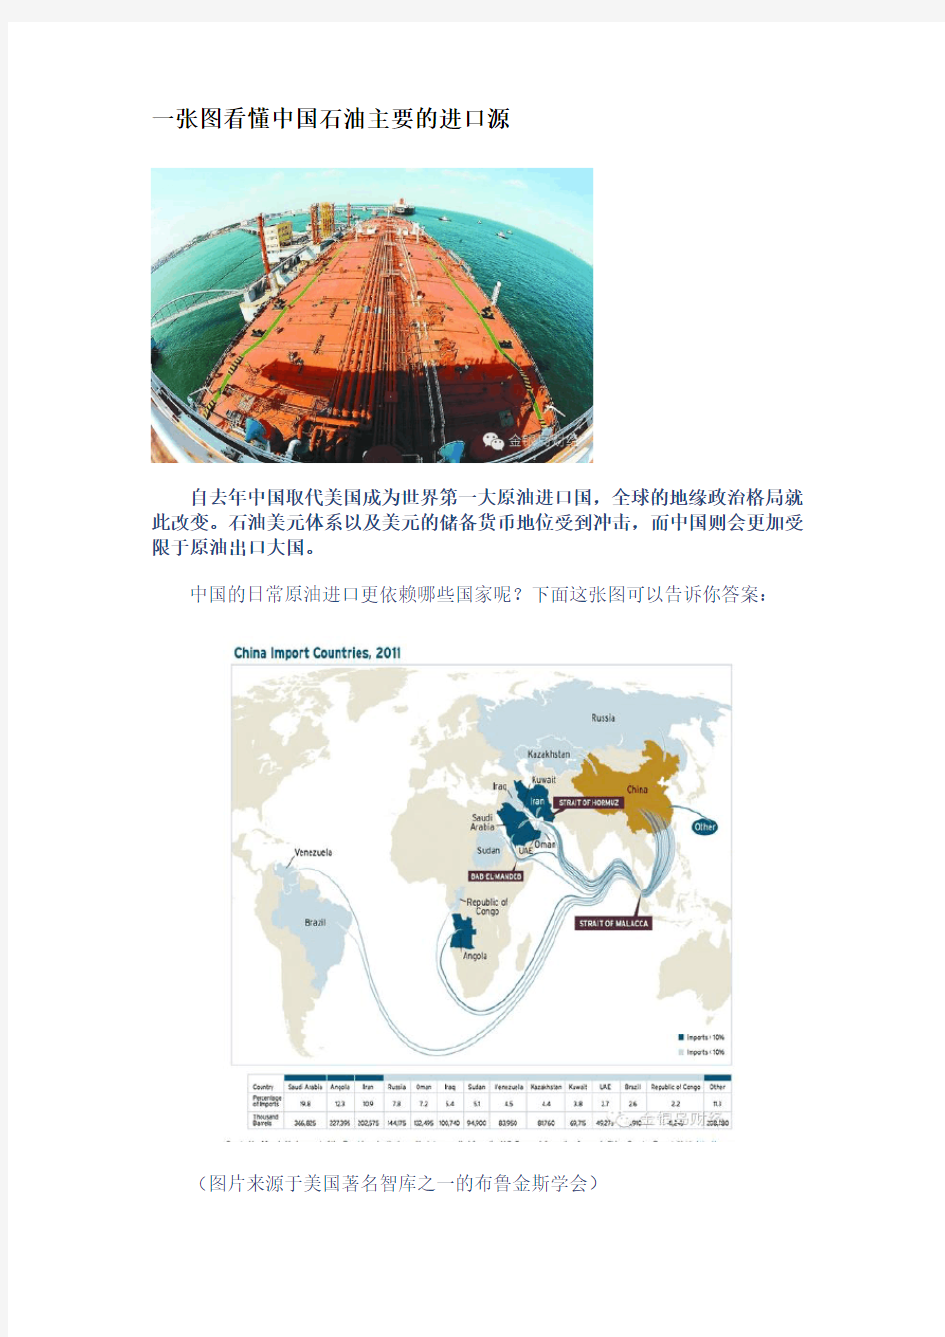 一张图看懂中国石油主要的进口源